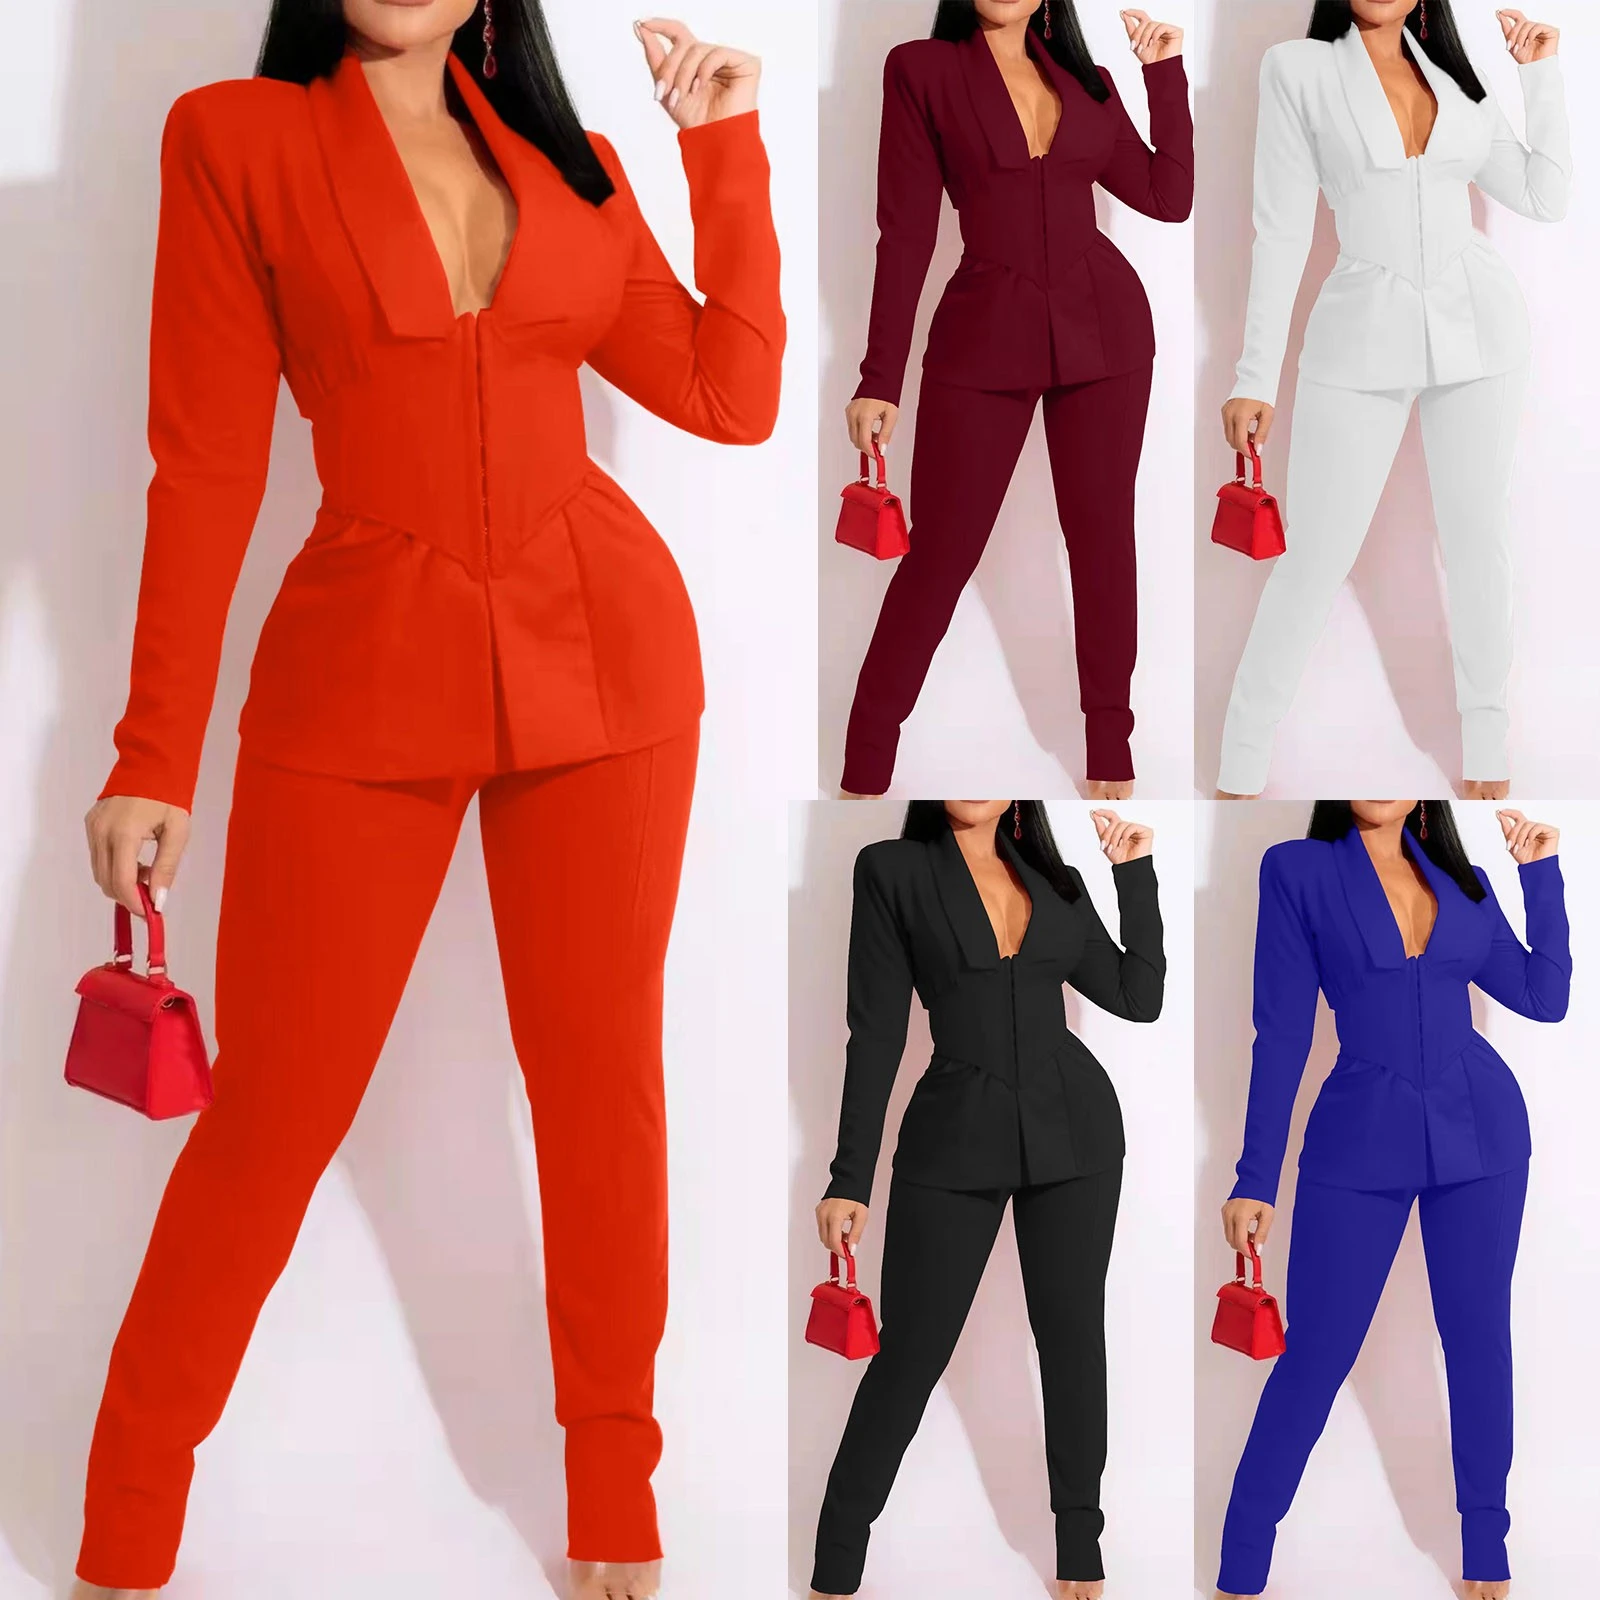 Women Suit Set Elegant Office Business Lapels Long Sleeve Formal Jacket  Long Pant Suit Slim Fit Ladies Curvy Leg Pants Two Piece| | - AliExpress